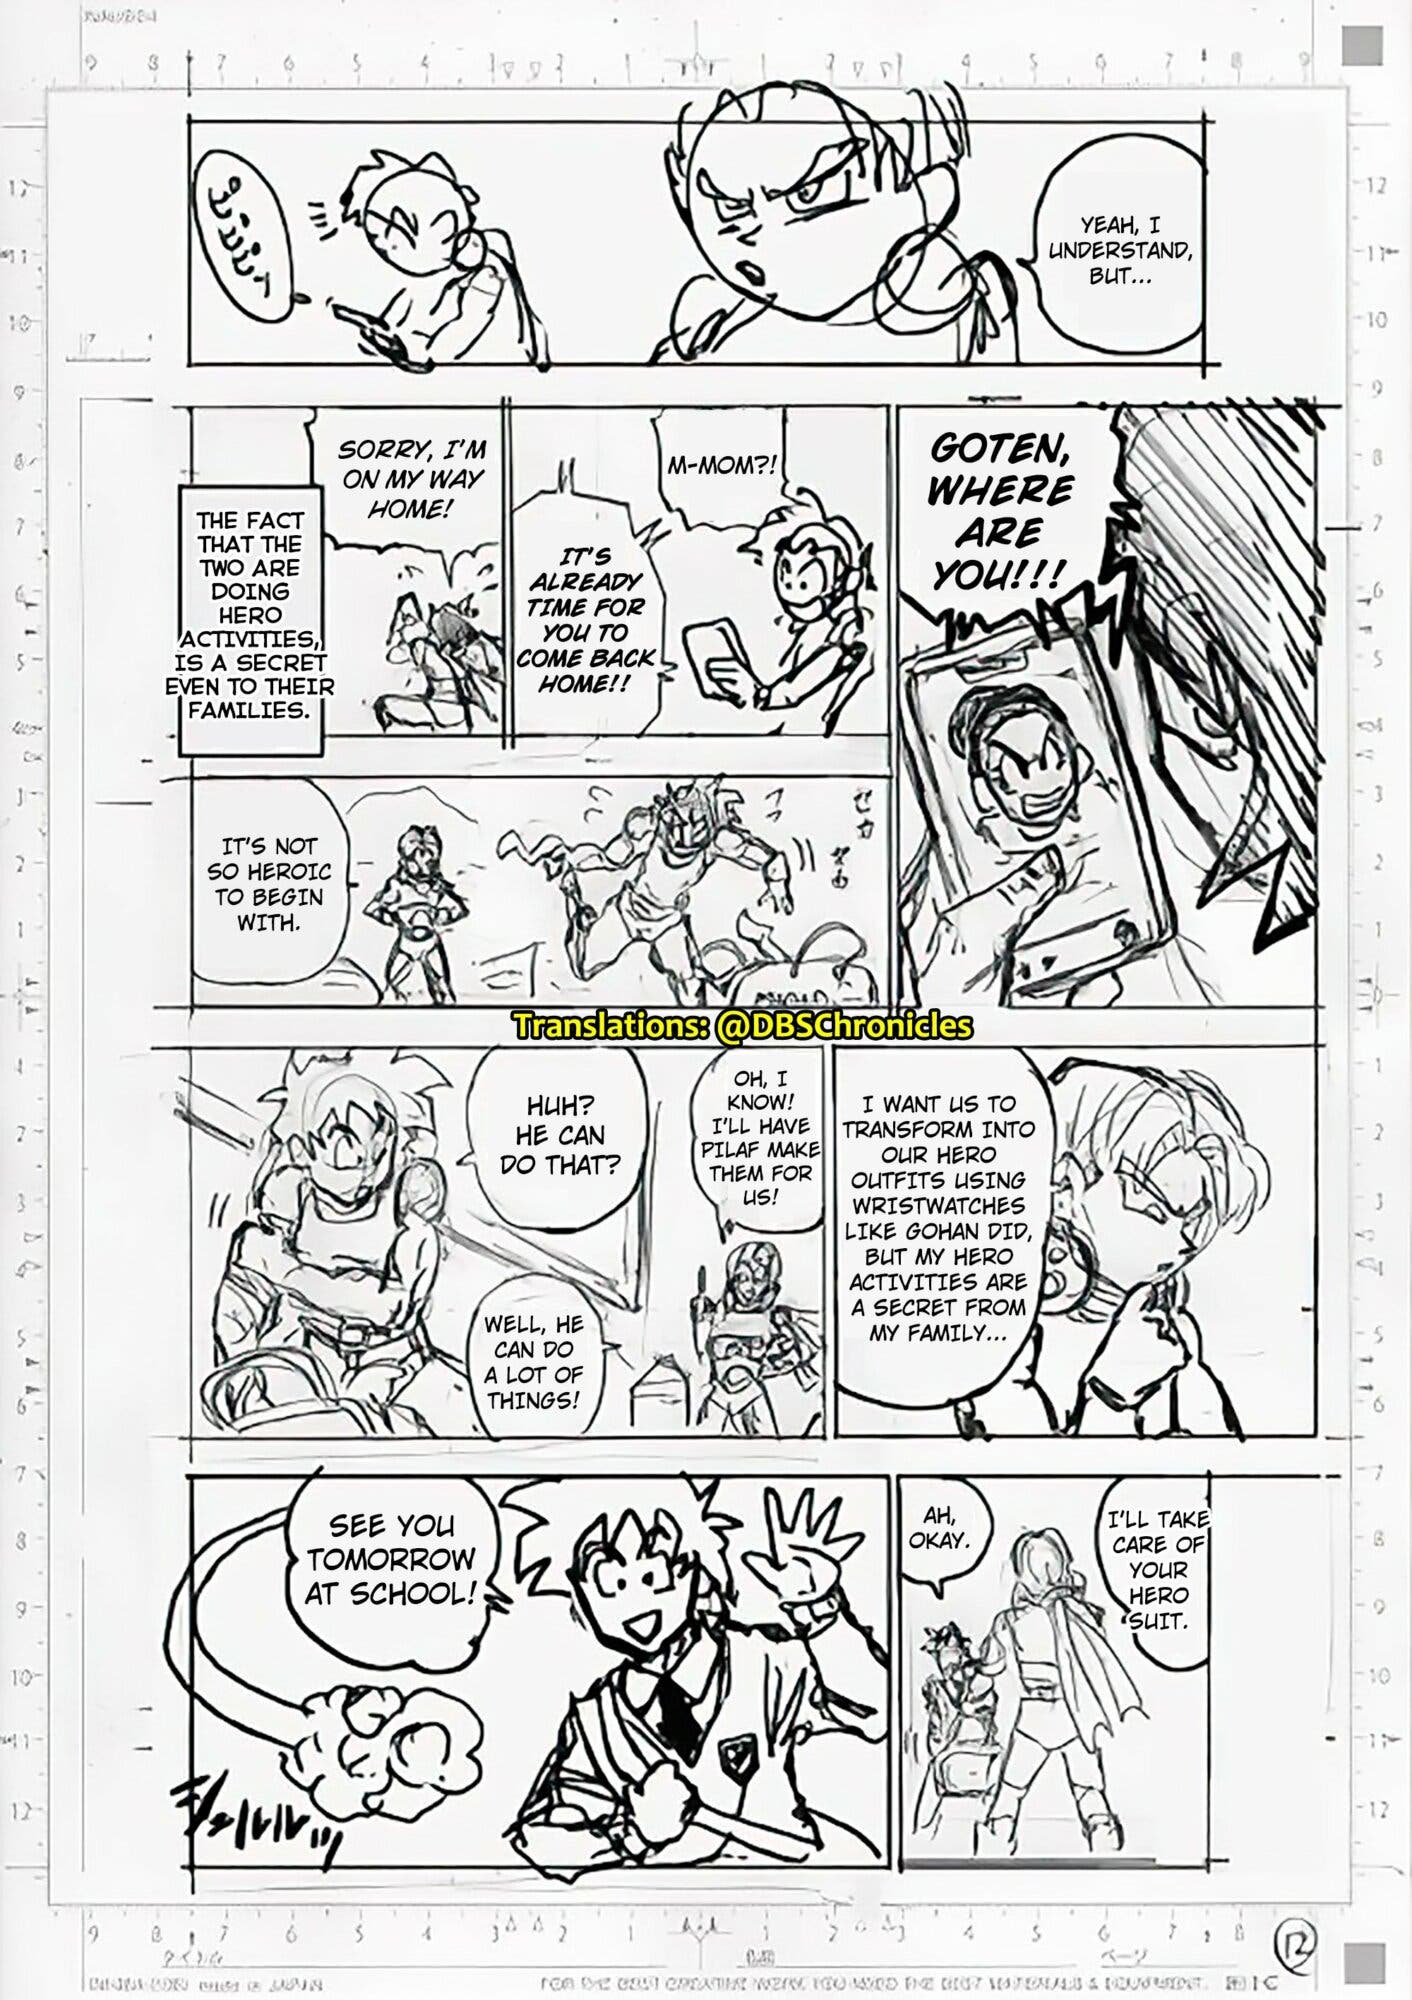 Dragon Ball Super manga 88 en español completo por manga plus: leer el capítulo  88 de DBS ONLINE Y GRATIS, Animes